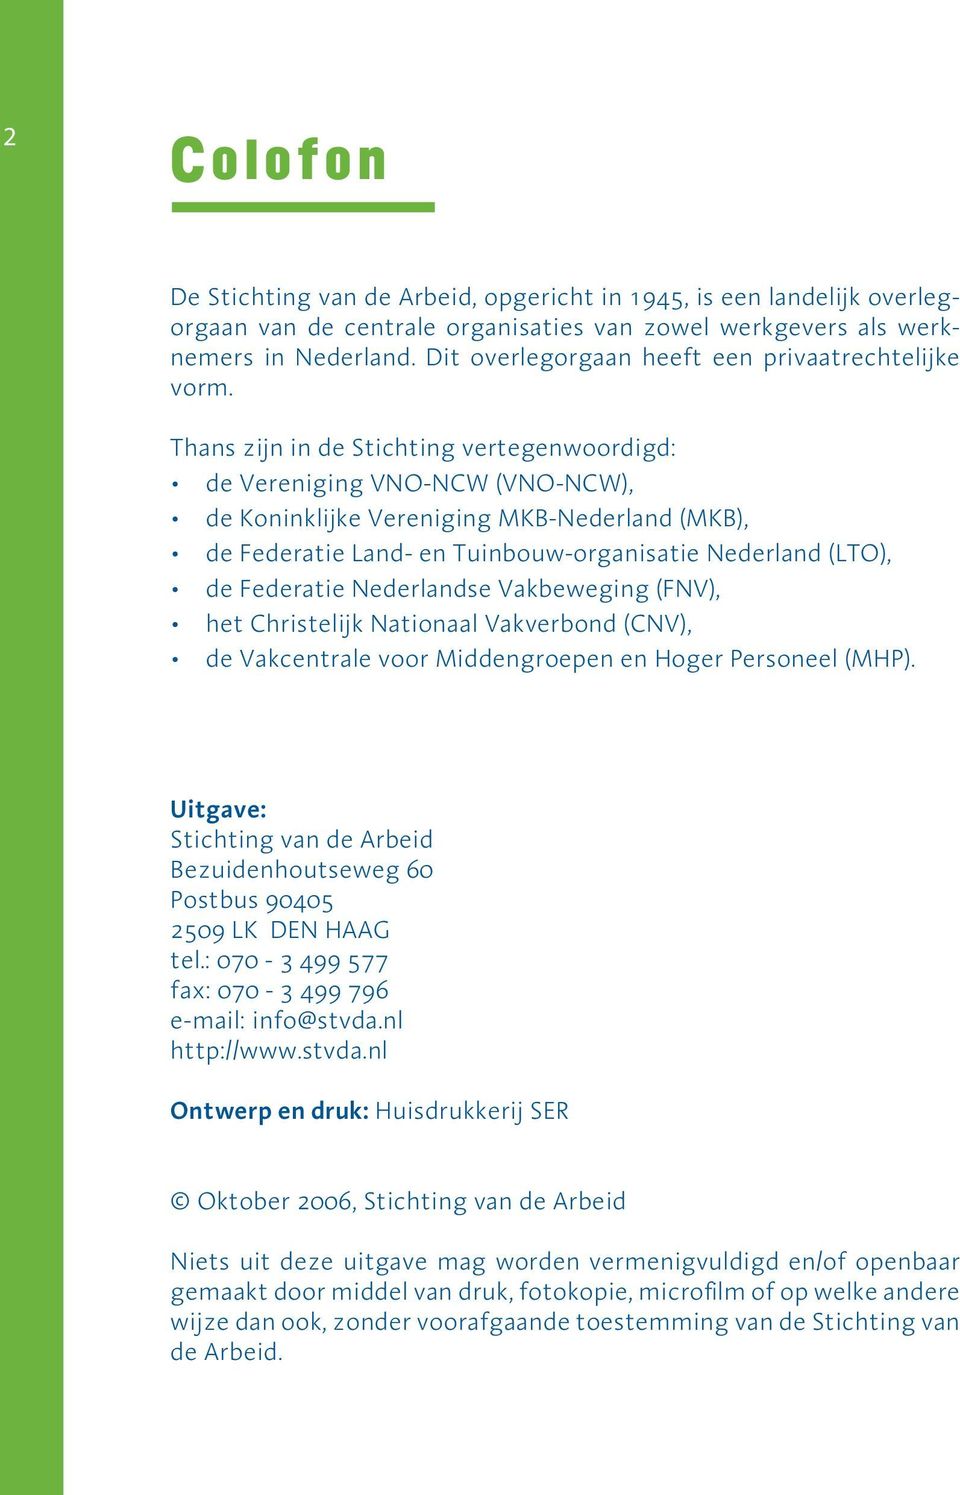 Thans zijn in de Stichting vertegenwoordigd: de Vereniging VNO-NCW (VNO-NCW), de Koninklijke Vereniging MKB-Nederland (MKB), de Federatie Land- en Tuinbouw-organisatie Nederland (LTO), de Federatie